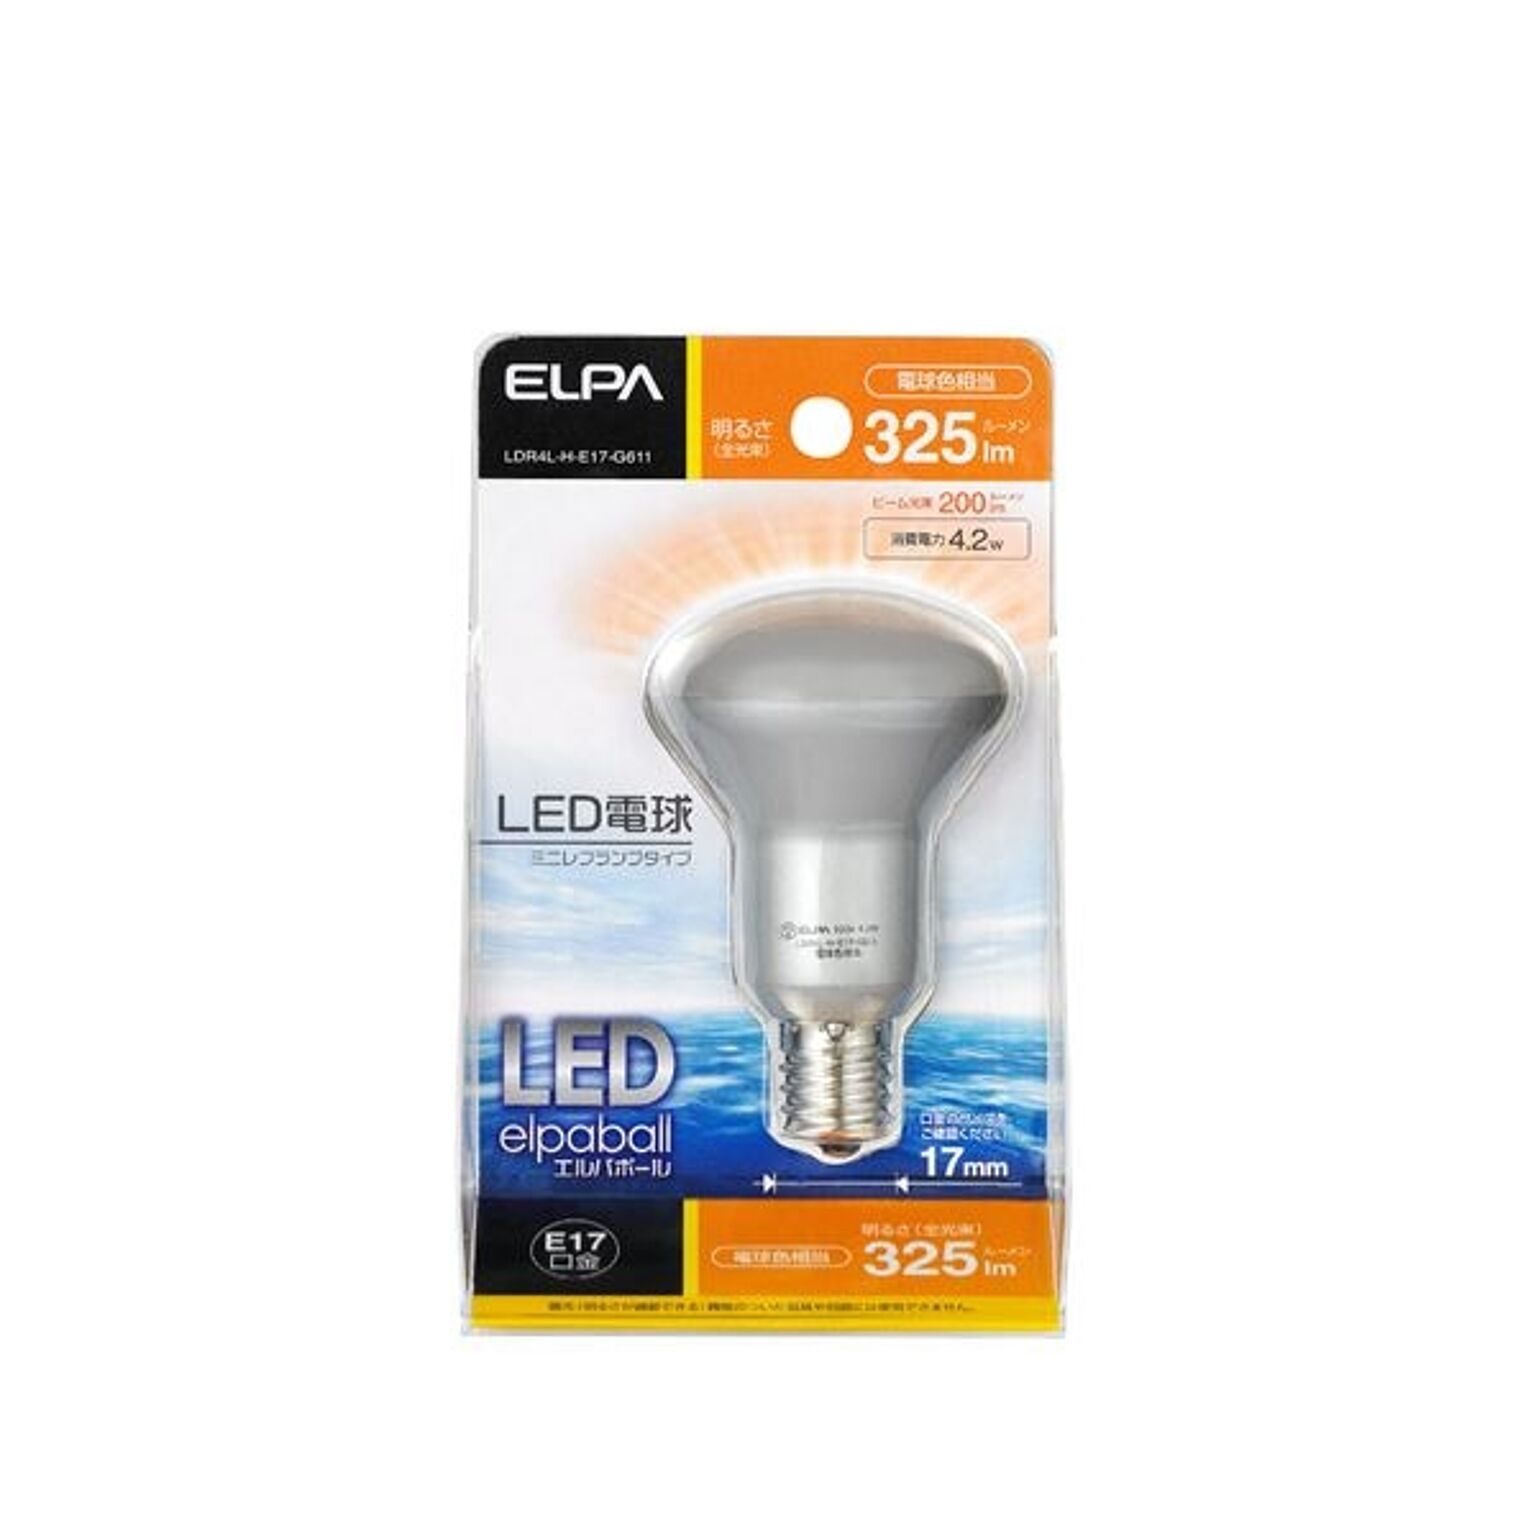 （まとめ） ELPA LED電球 ミニレフ球形 30W E17 電球色 LDR4L-H-E17-G611 【×10セット】